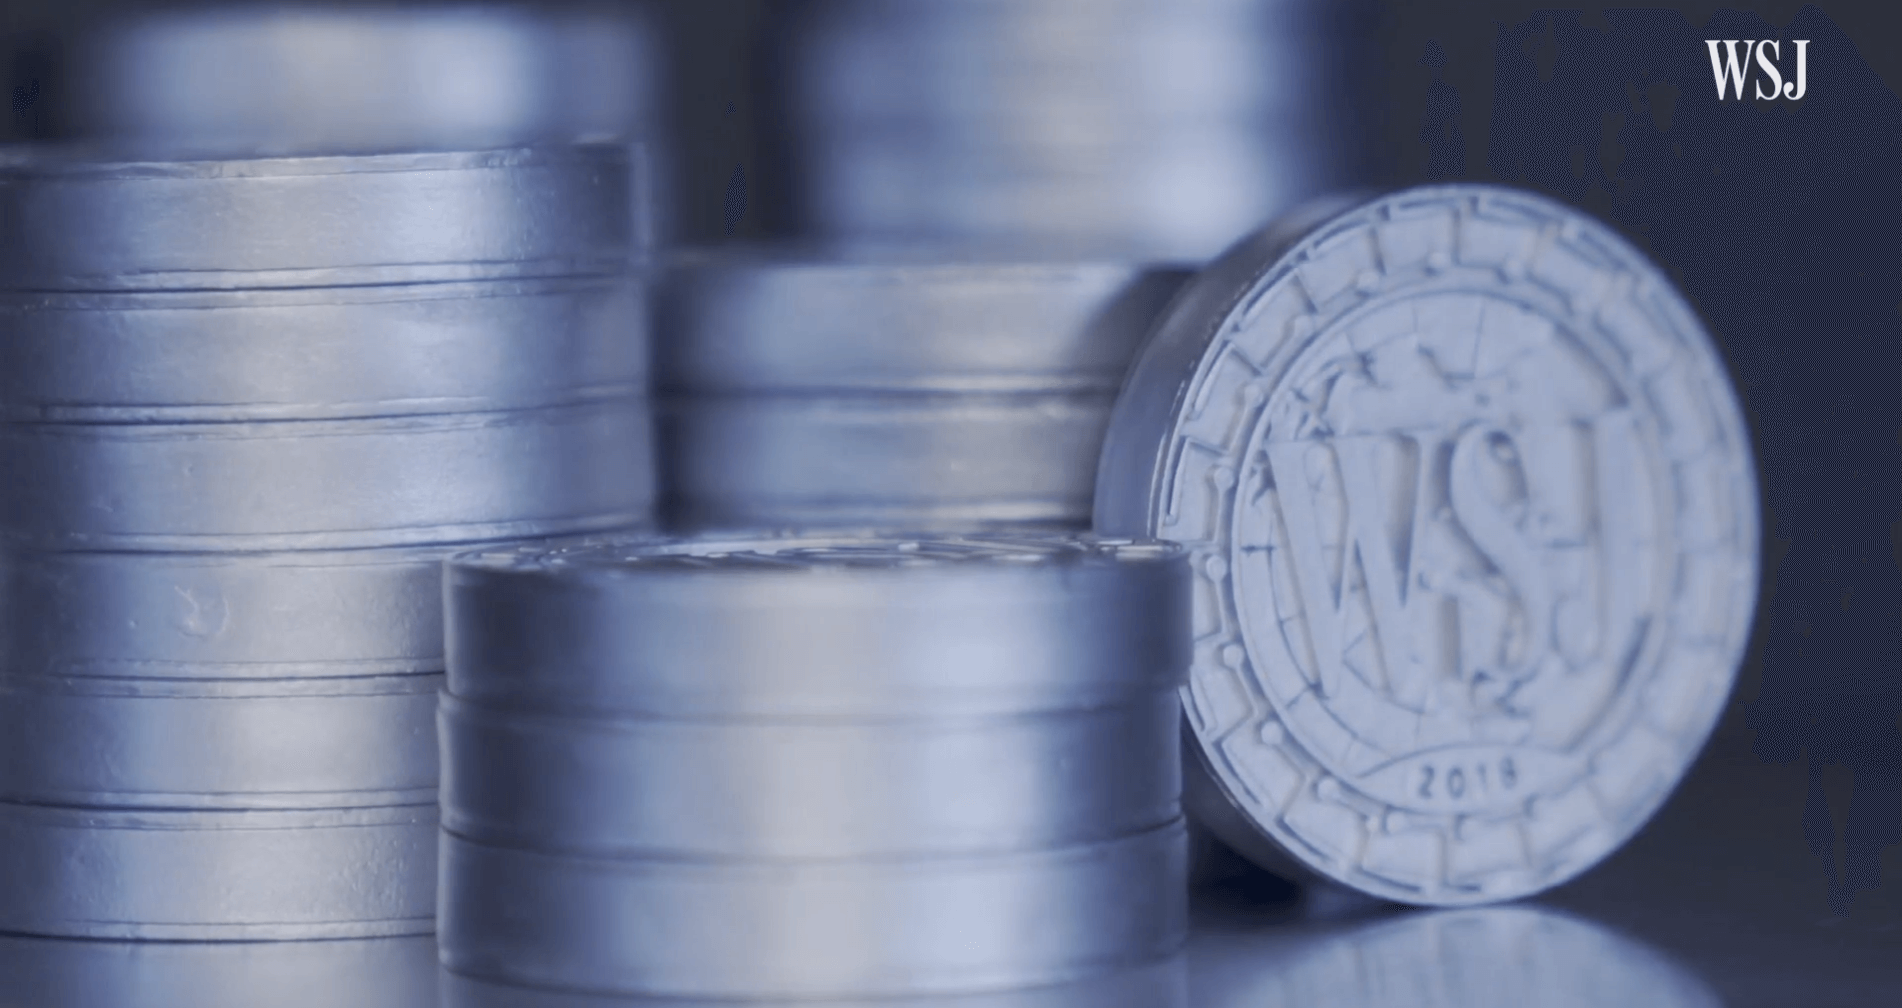 Aufstieg und Fall des Wall Street Journal-Coins